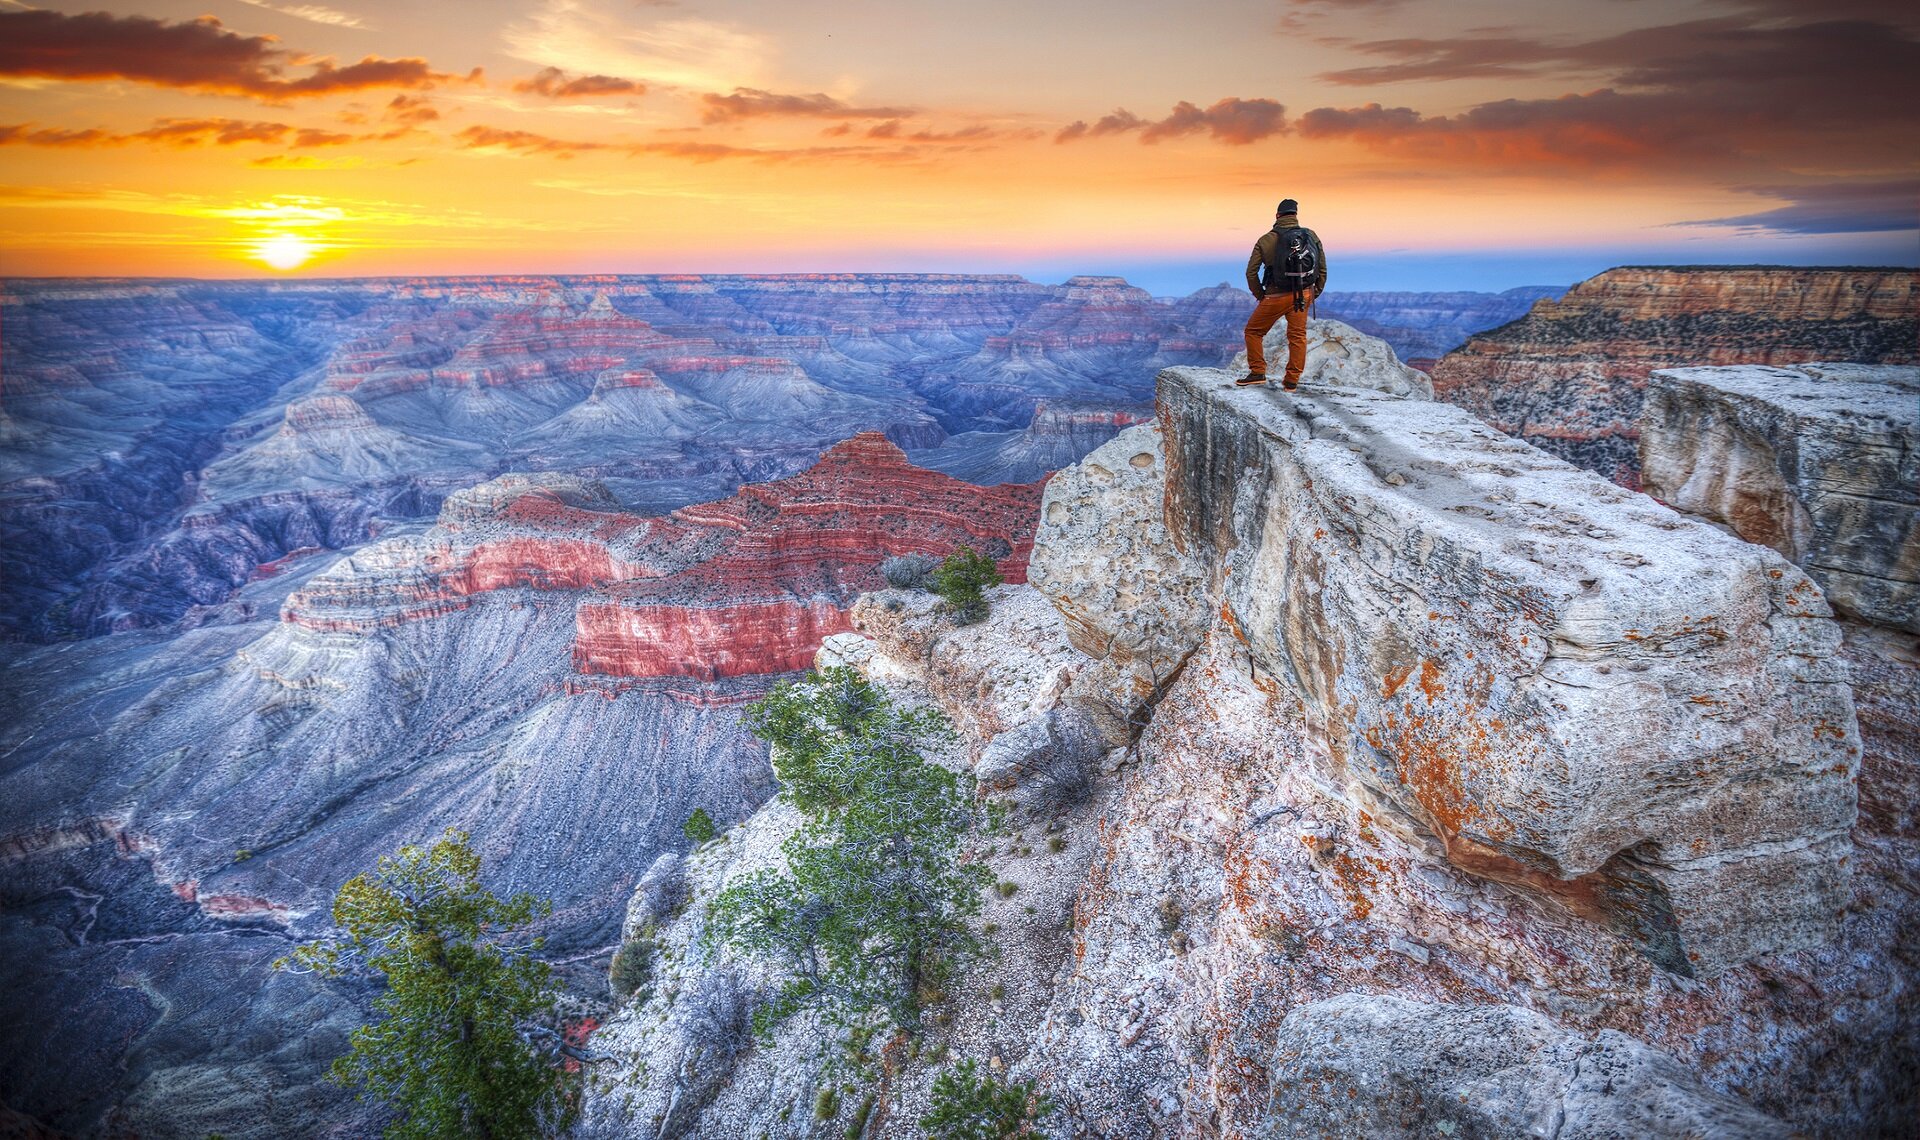 I migliori 12 Parchi Americani del West Usa secondo i #Nomadimoderni